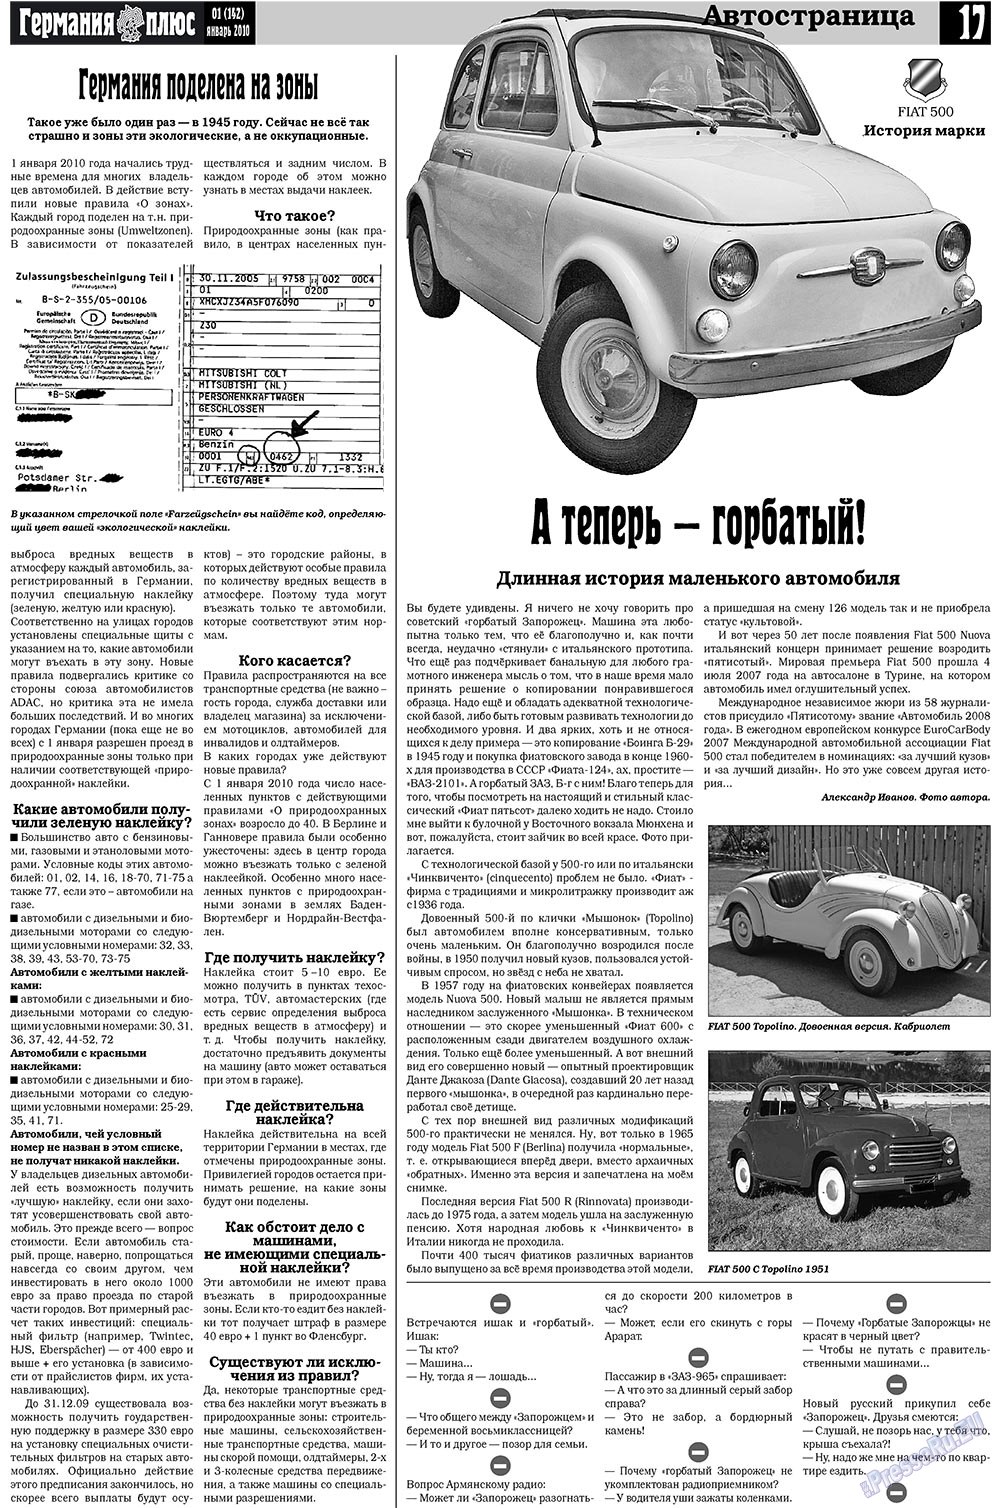 Германия плюс (газета). 2010 год, номер 1, стр. 17